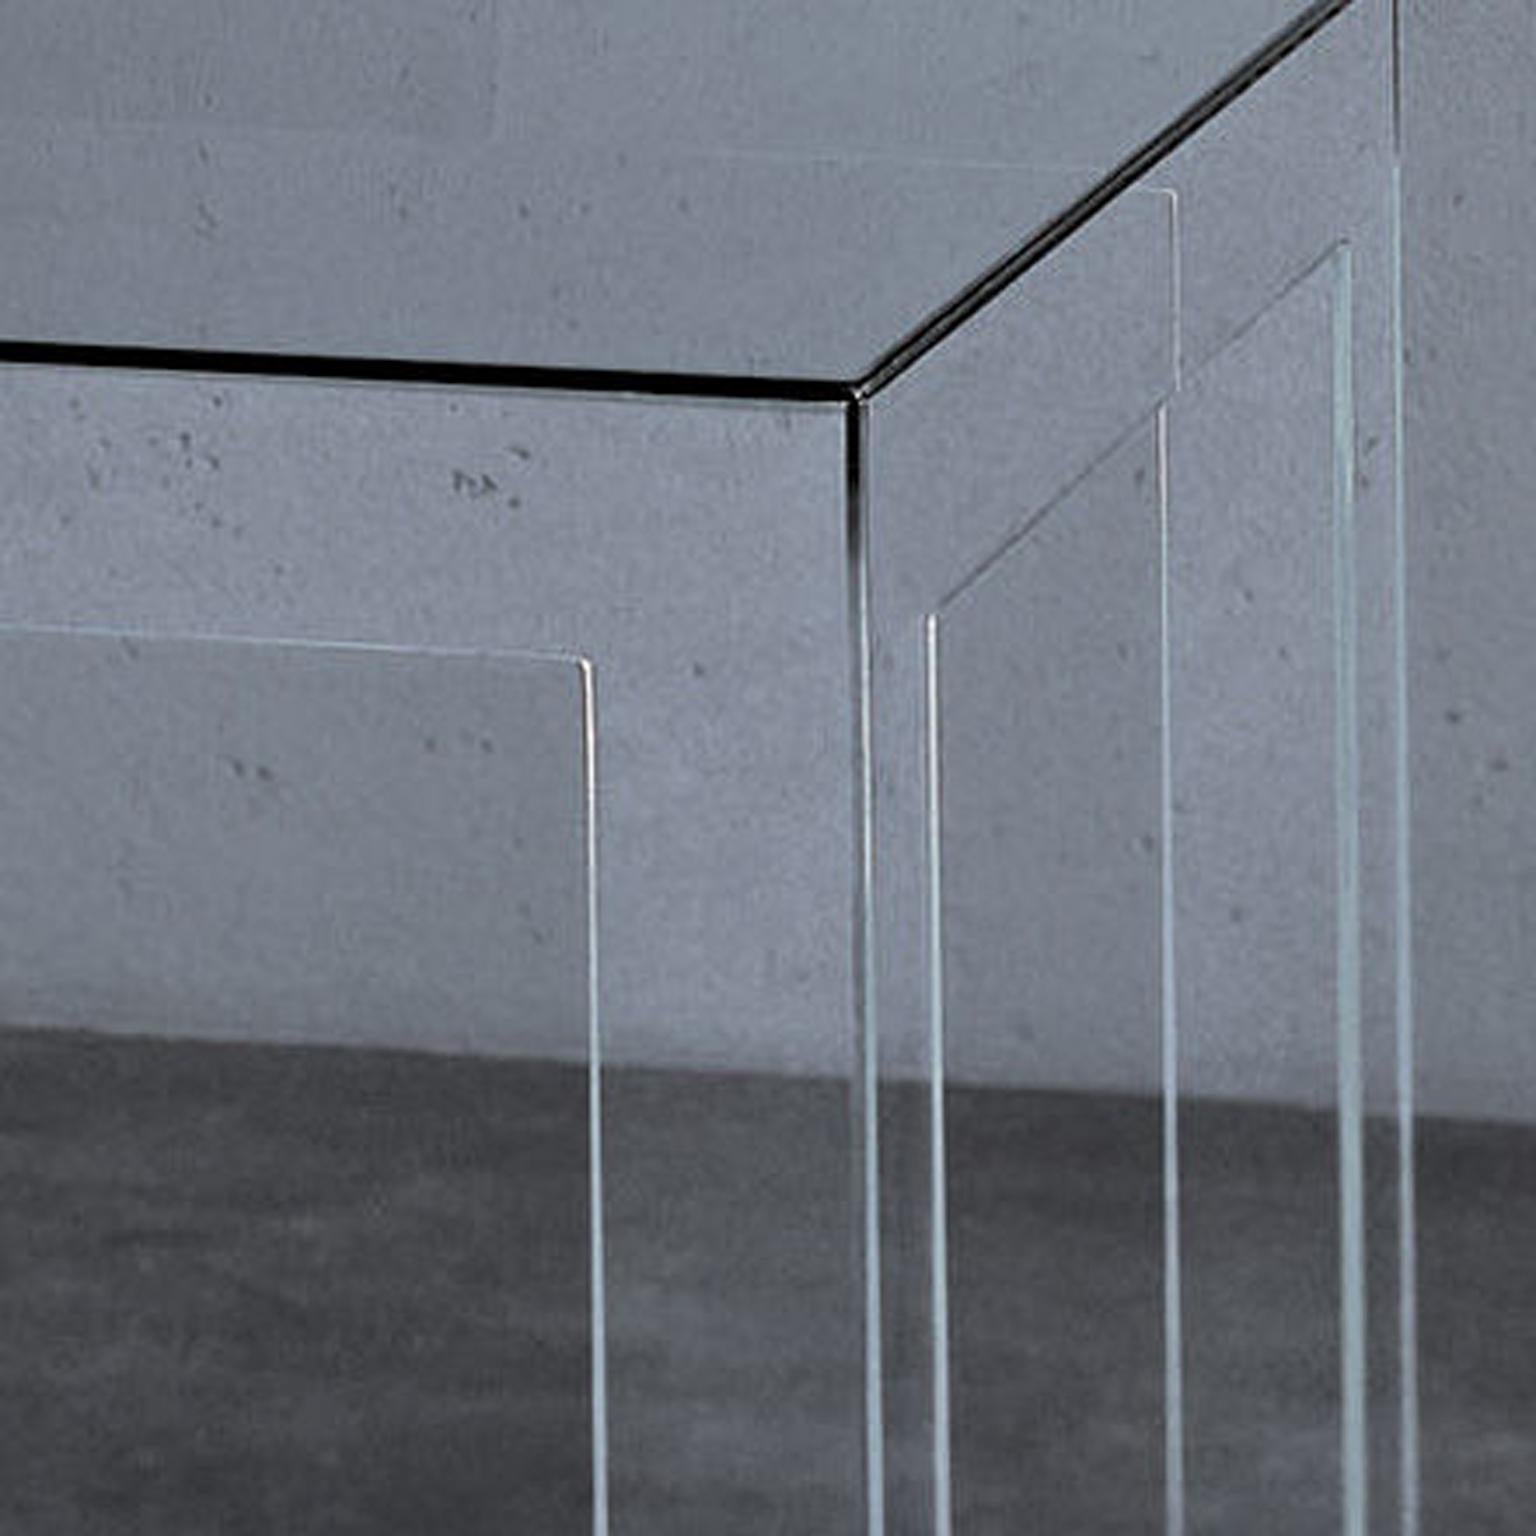 Table de salle à manger en verre transparent de conception contemporaine italienne, entièrement fabriquée en Italie.

Les principales caractéristiques de cette belle table très élégante sont : la pureté de sa forme, la sobriété et les techniques